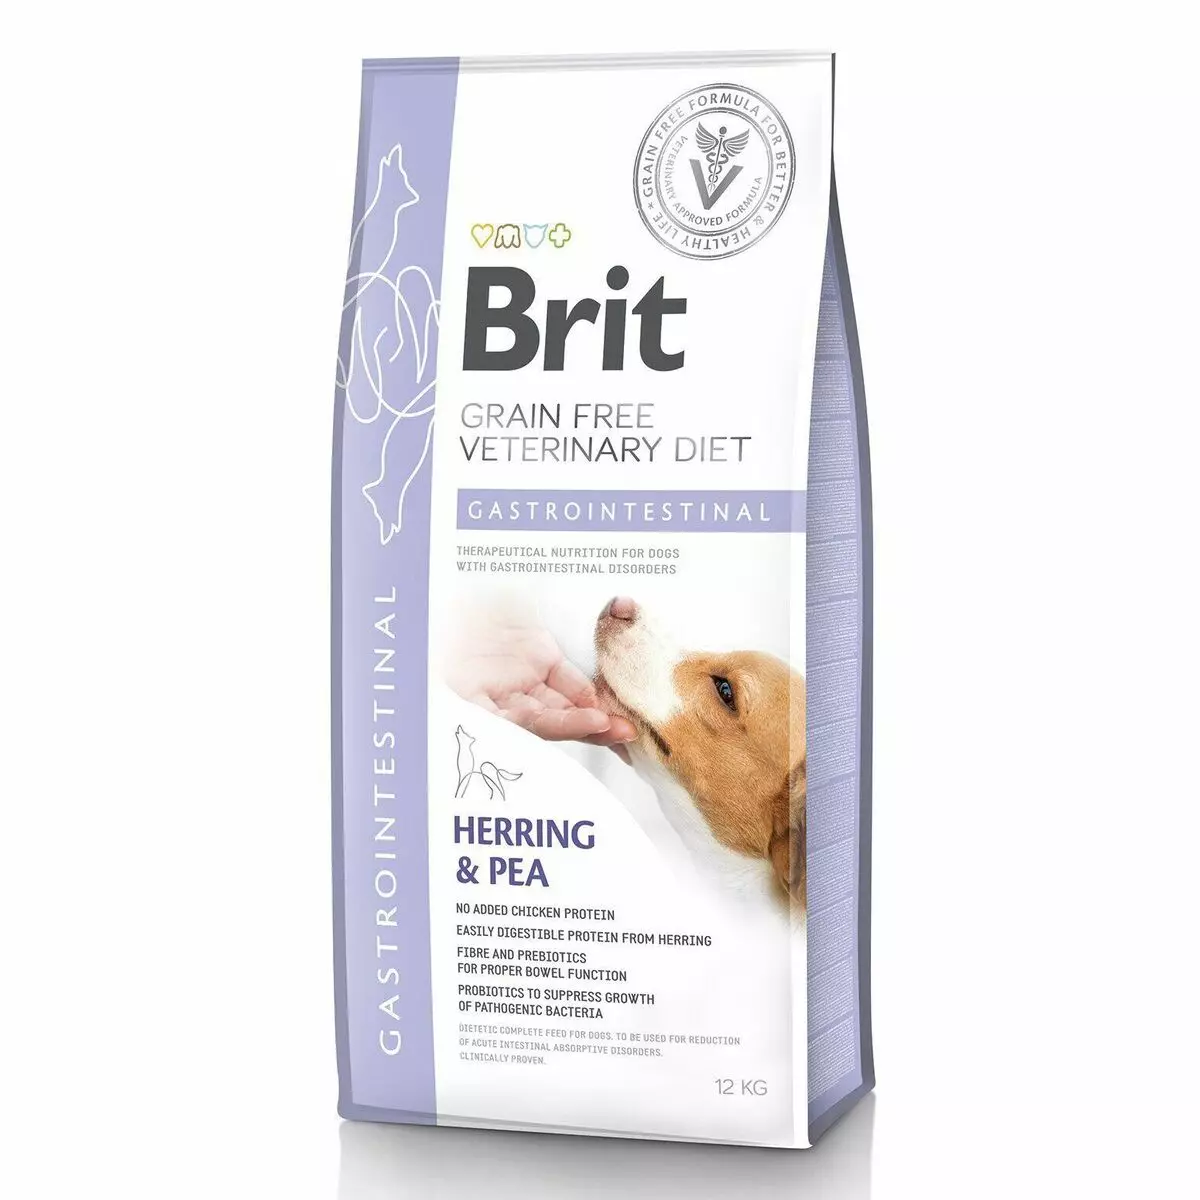 Στεγνό φαγητό για σκύλους Brit: Σύνθεση τροφής για ενήλικες και ηλικιωμένους σκύλους με ένα αρνί 15 kg, άλλες ζωοτροφές σκυλιών, κριτικές σχόλια 22046_9